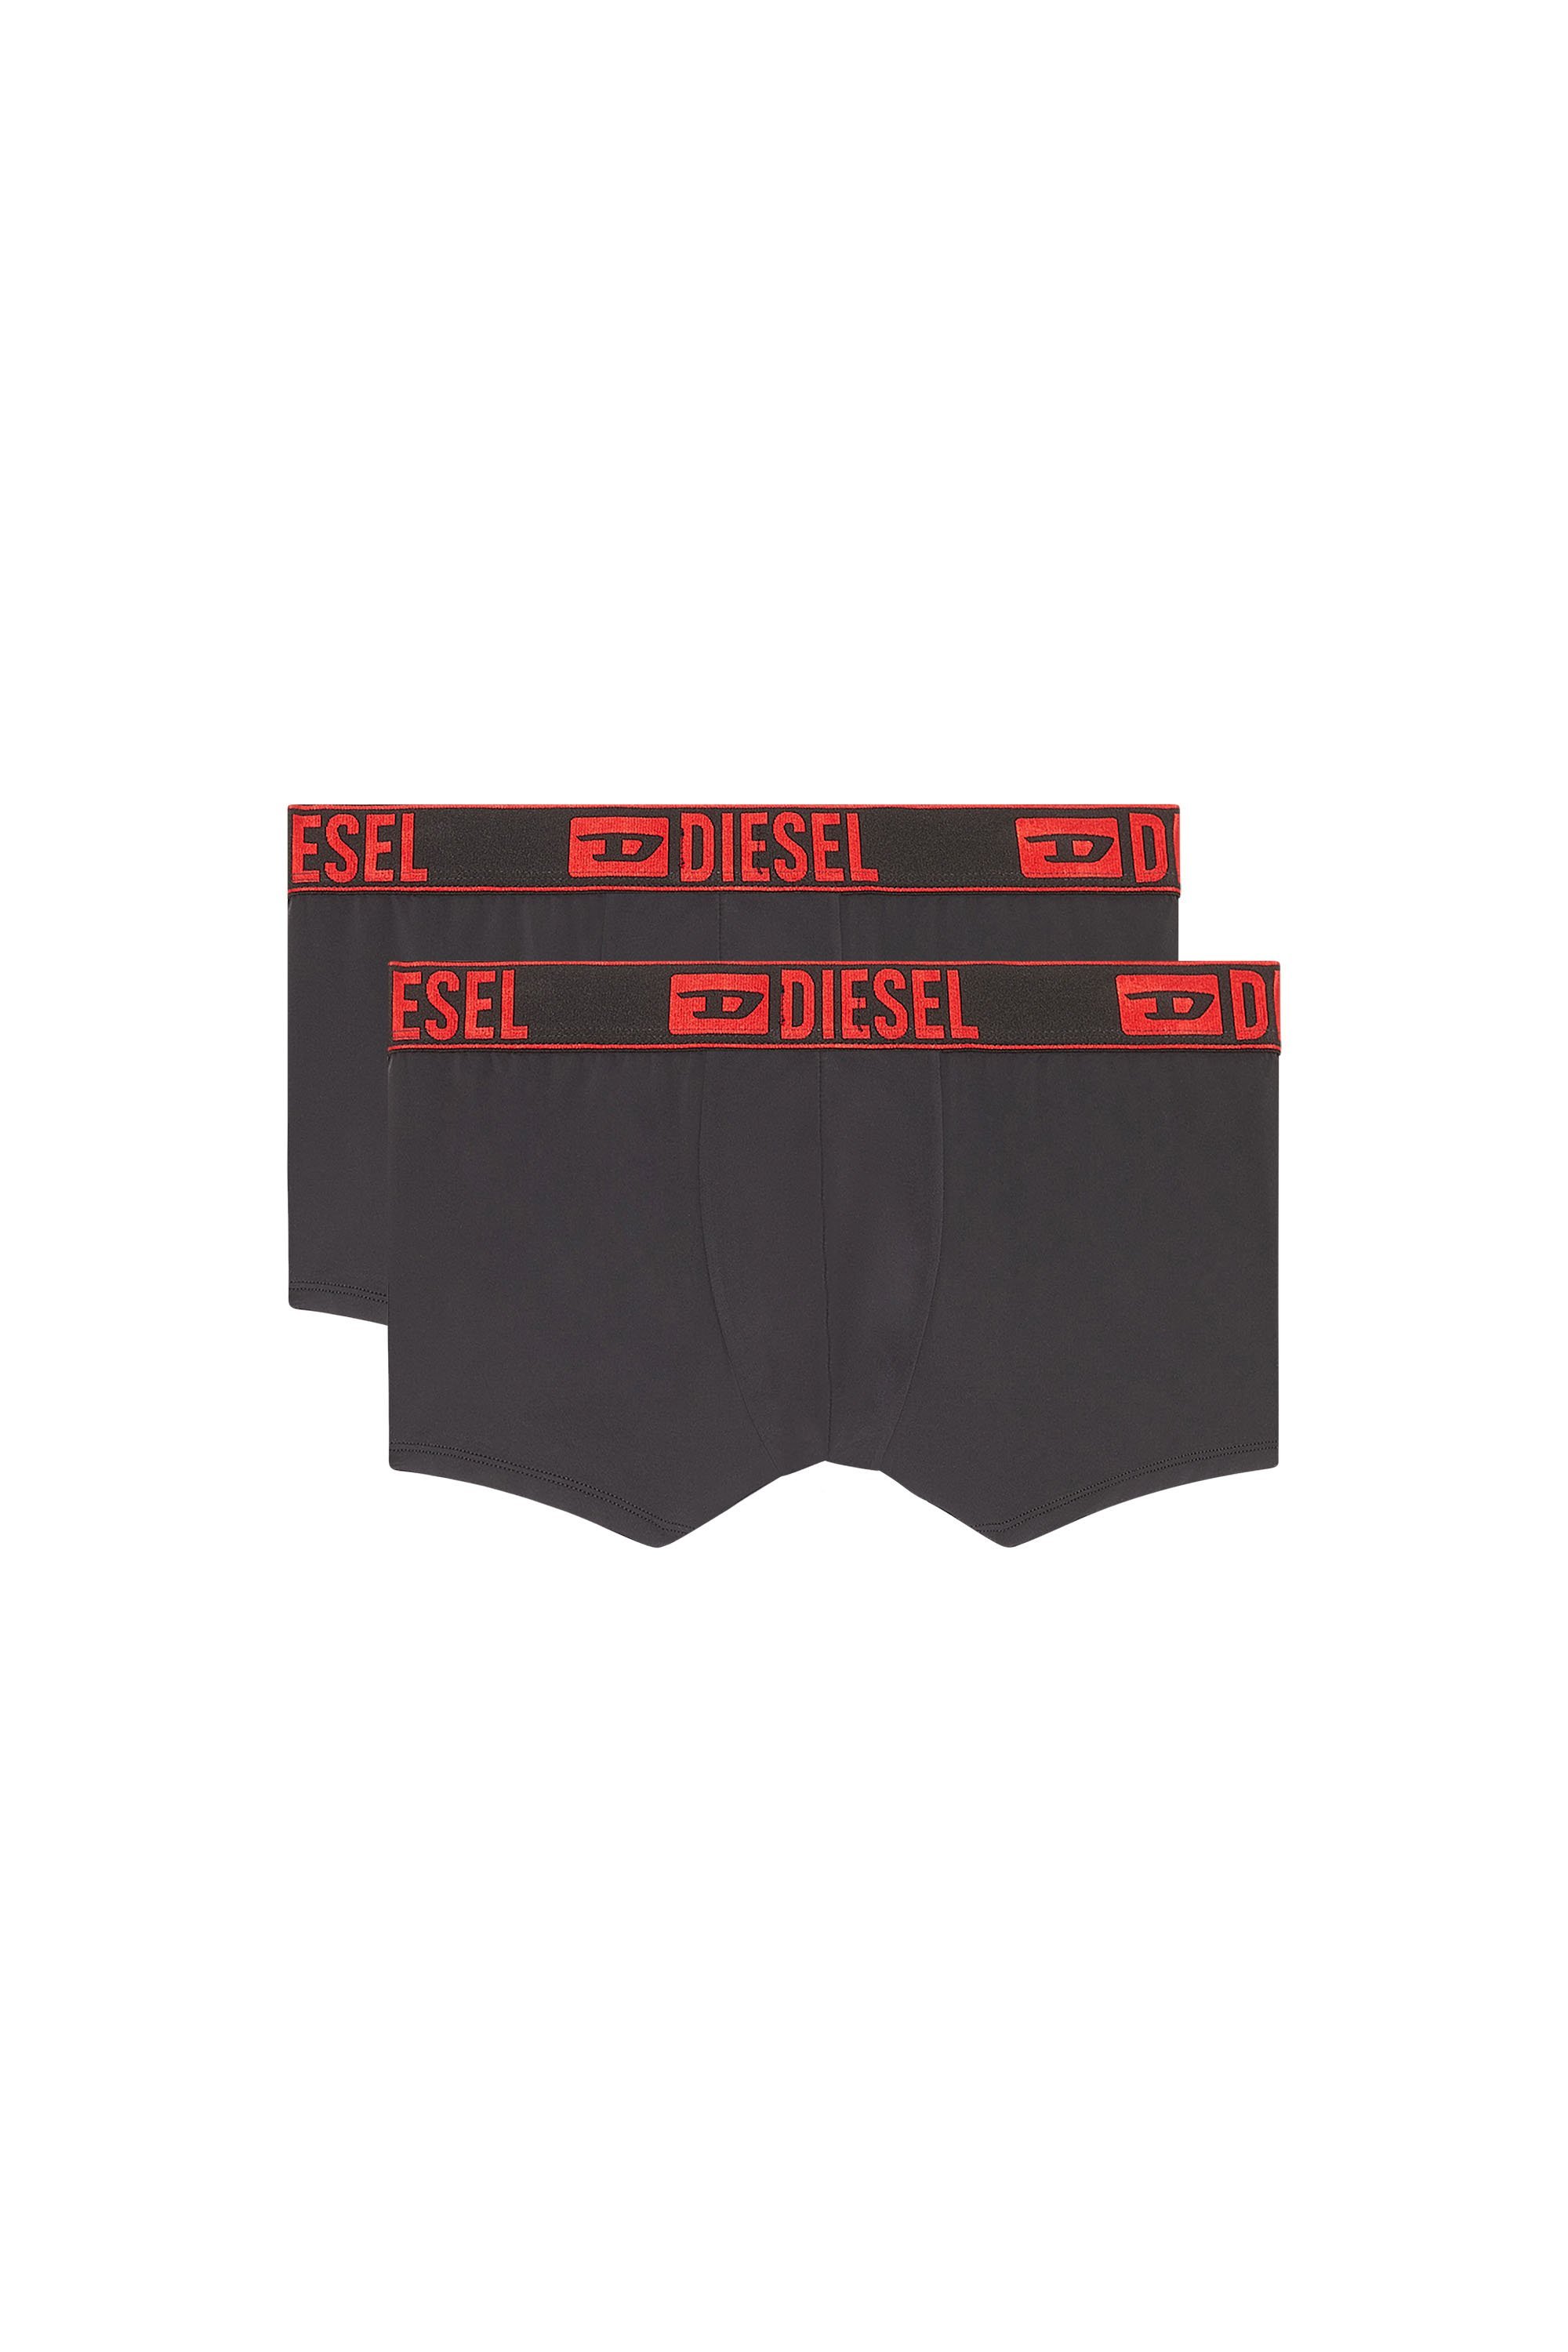 ディーゼル DIESEL メンズ アンダーウェア ボクサーパンツ 2枚セット ディーゼル インナー・ルームウェア ボクサーパンツ・トランクス ブラック【送料無料】